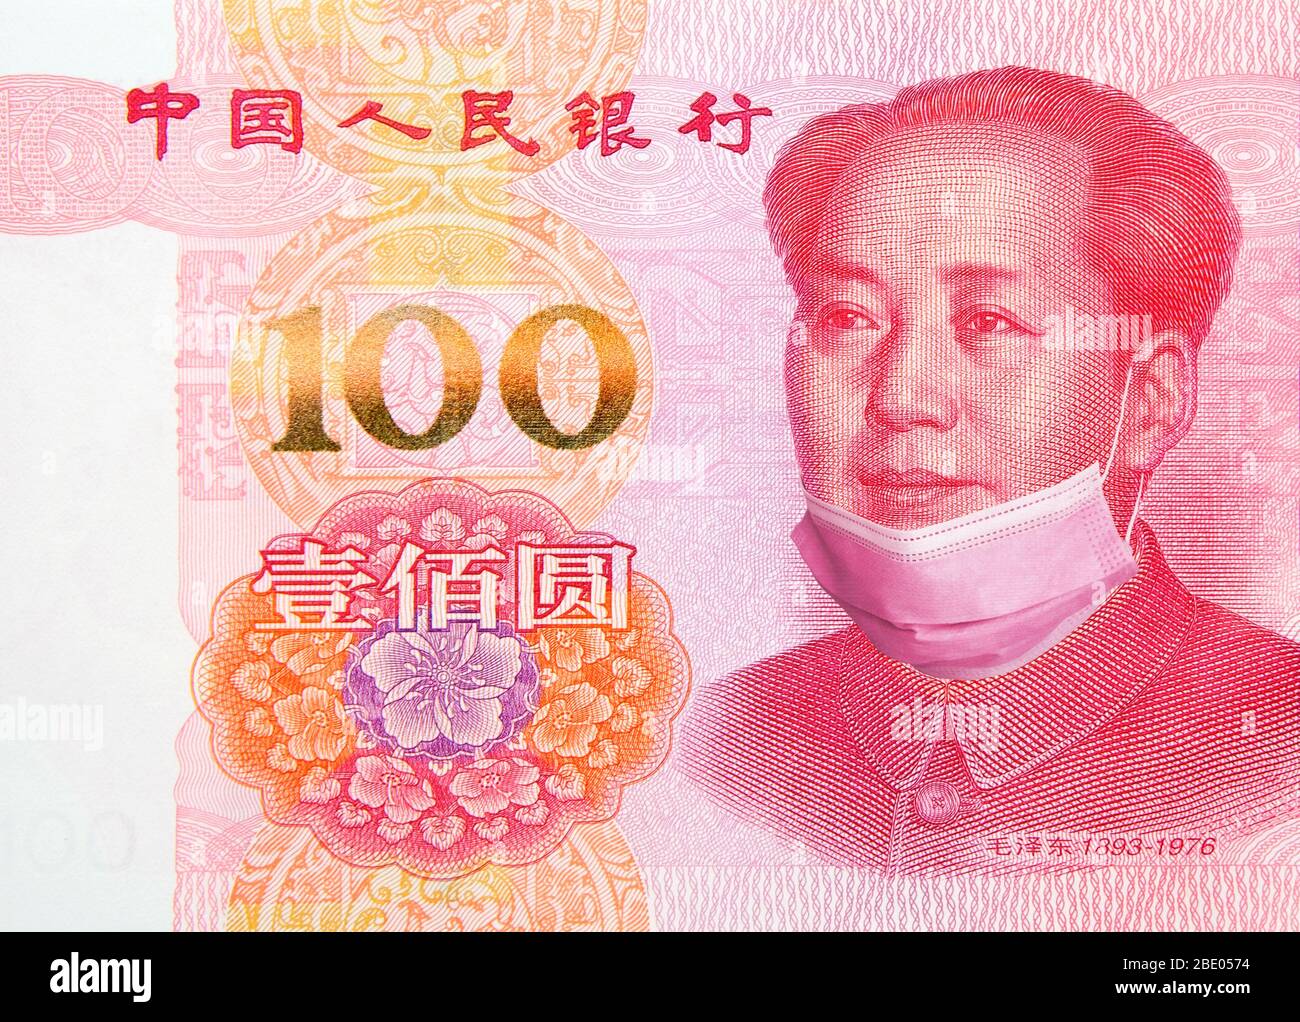 La Chine met fin au verrouillage et à la quarantaine du coronavirus. Billet de 100 yuans avec masque de visage retiré. La Chine assouplir les restrictions à la reprise économique Banque D'Images